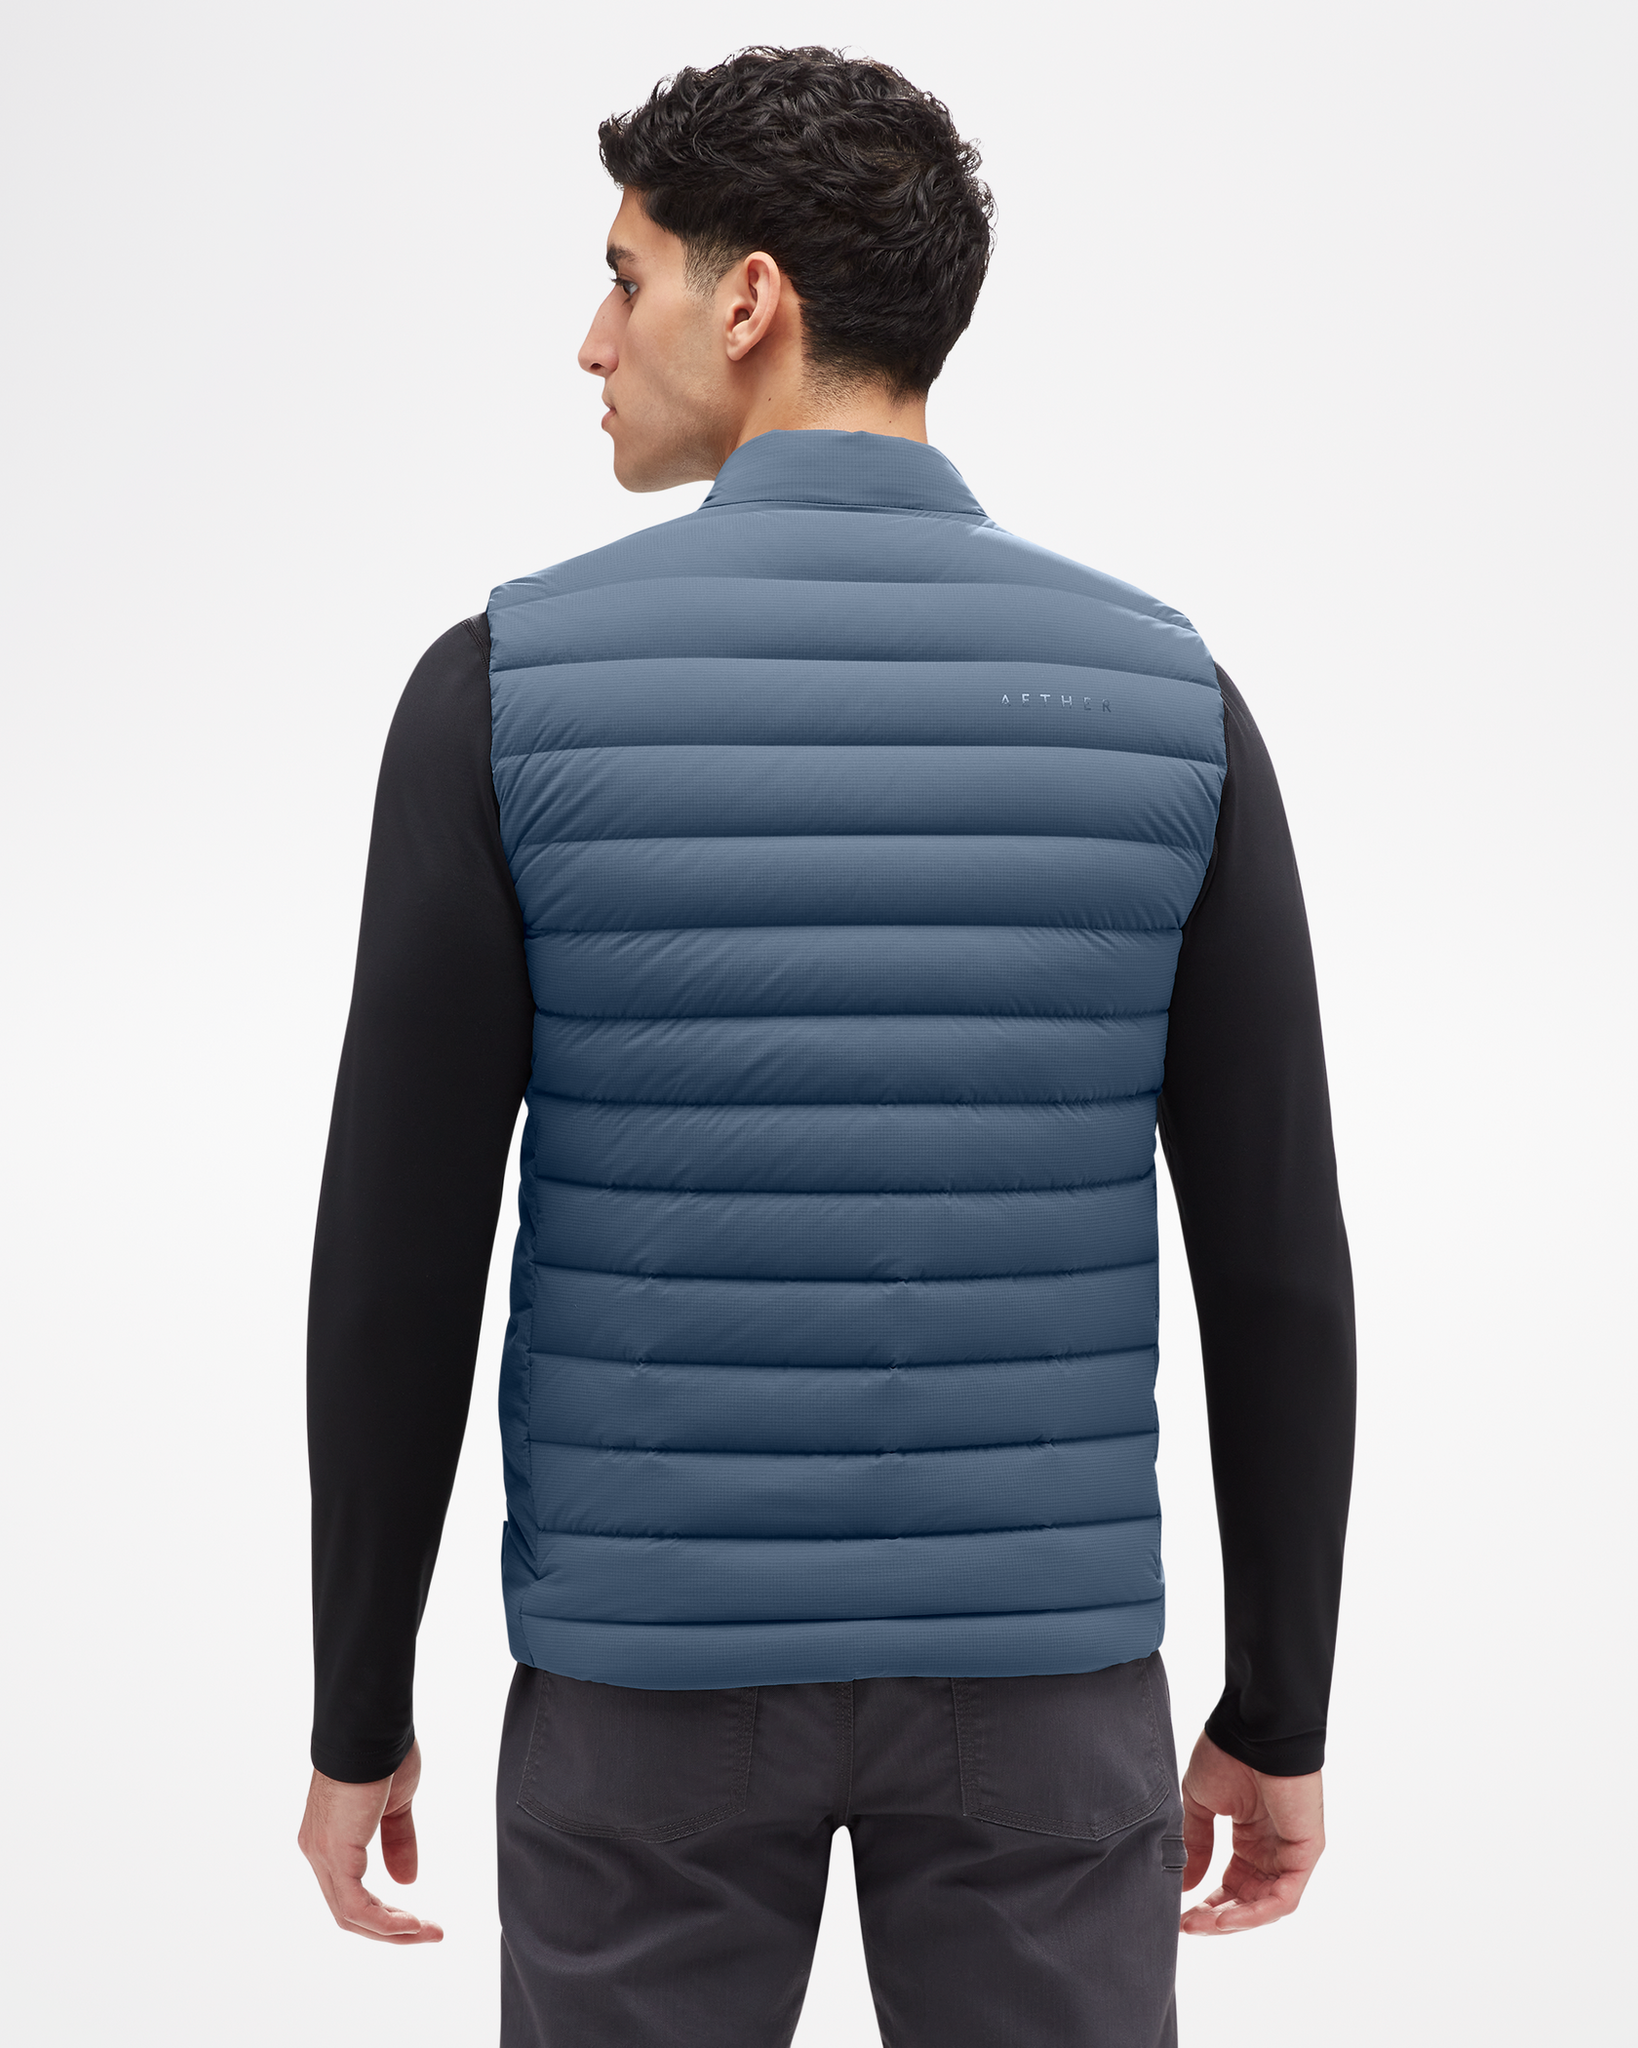 ASPENX Aether Launch Men's Vest Aspen Blue Back